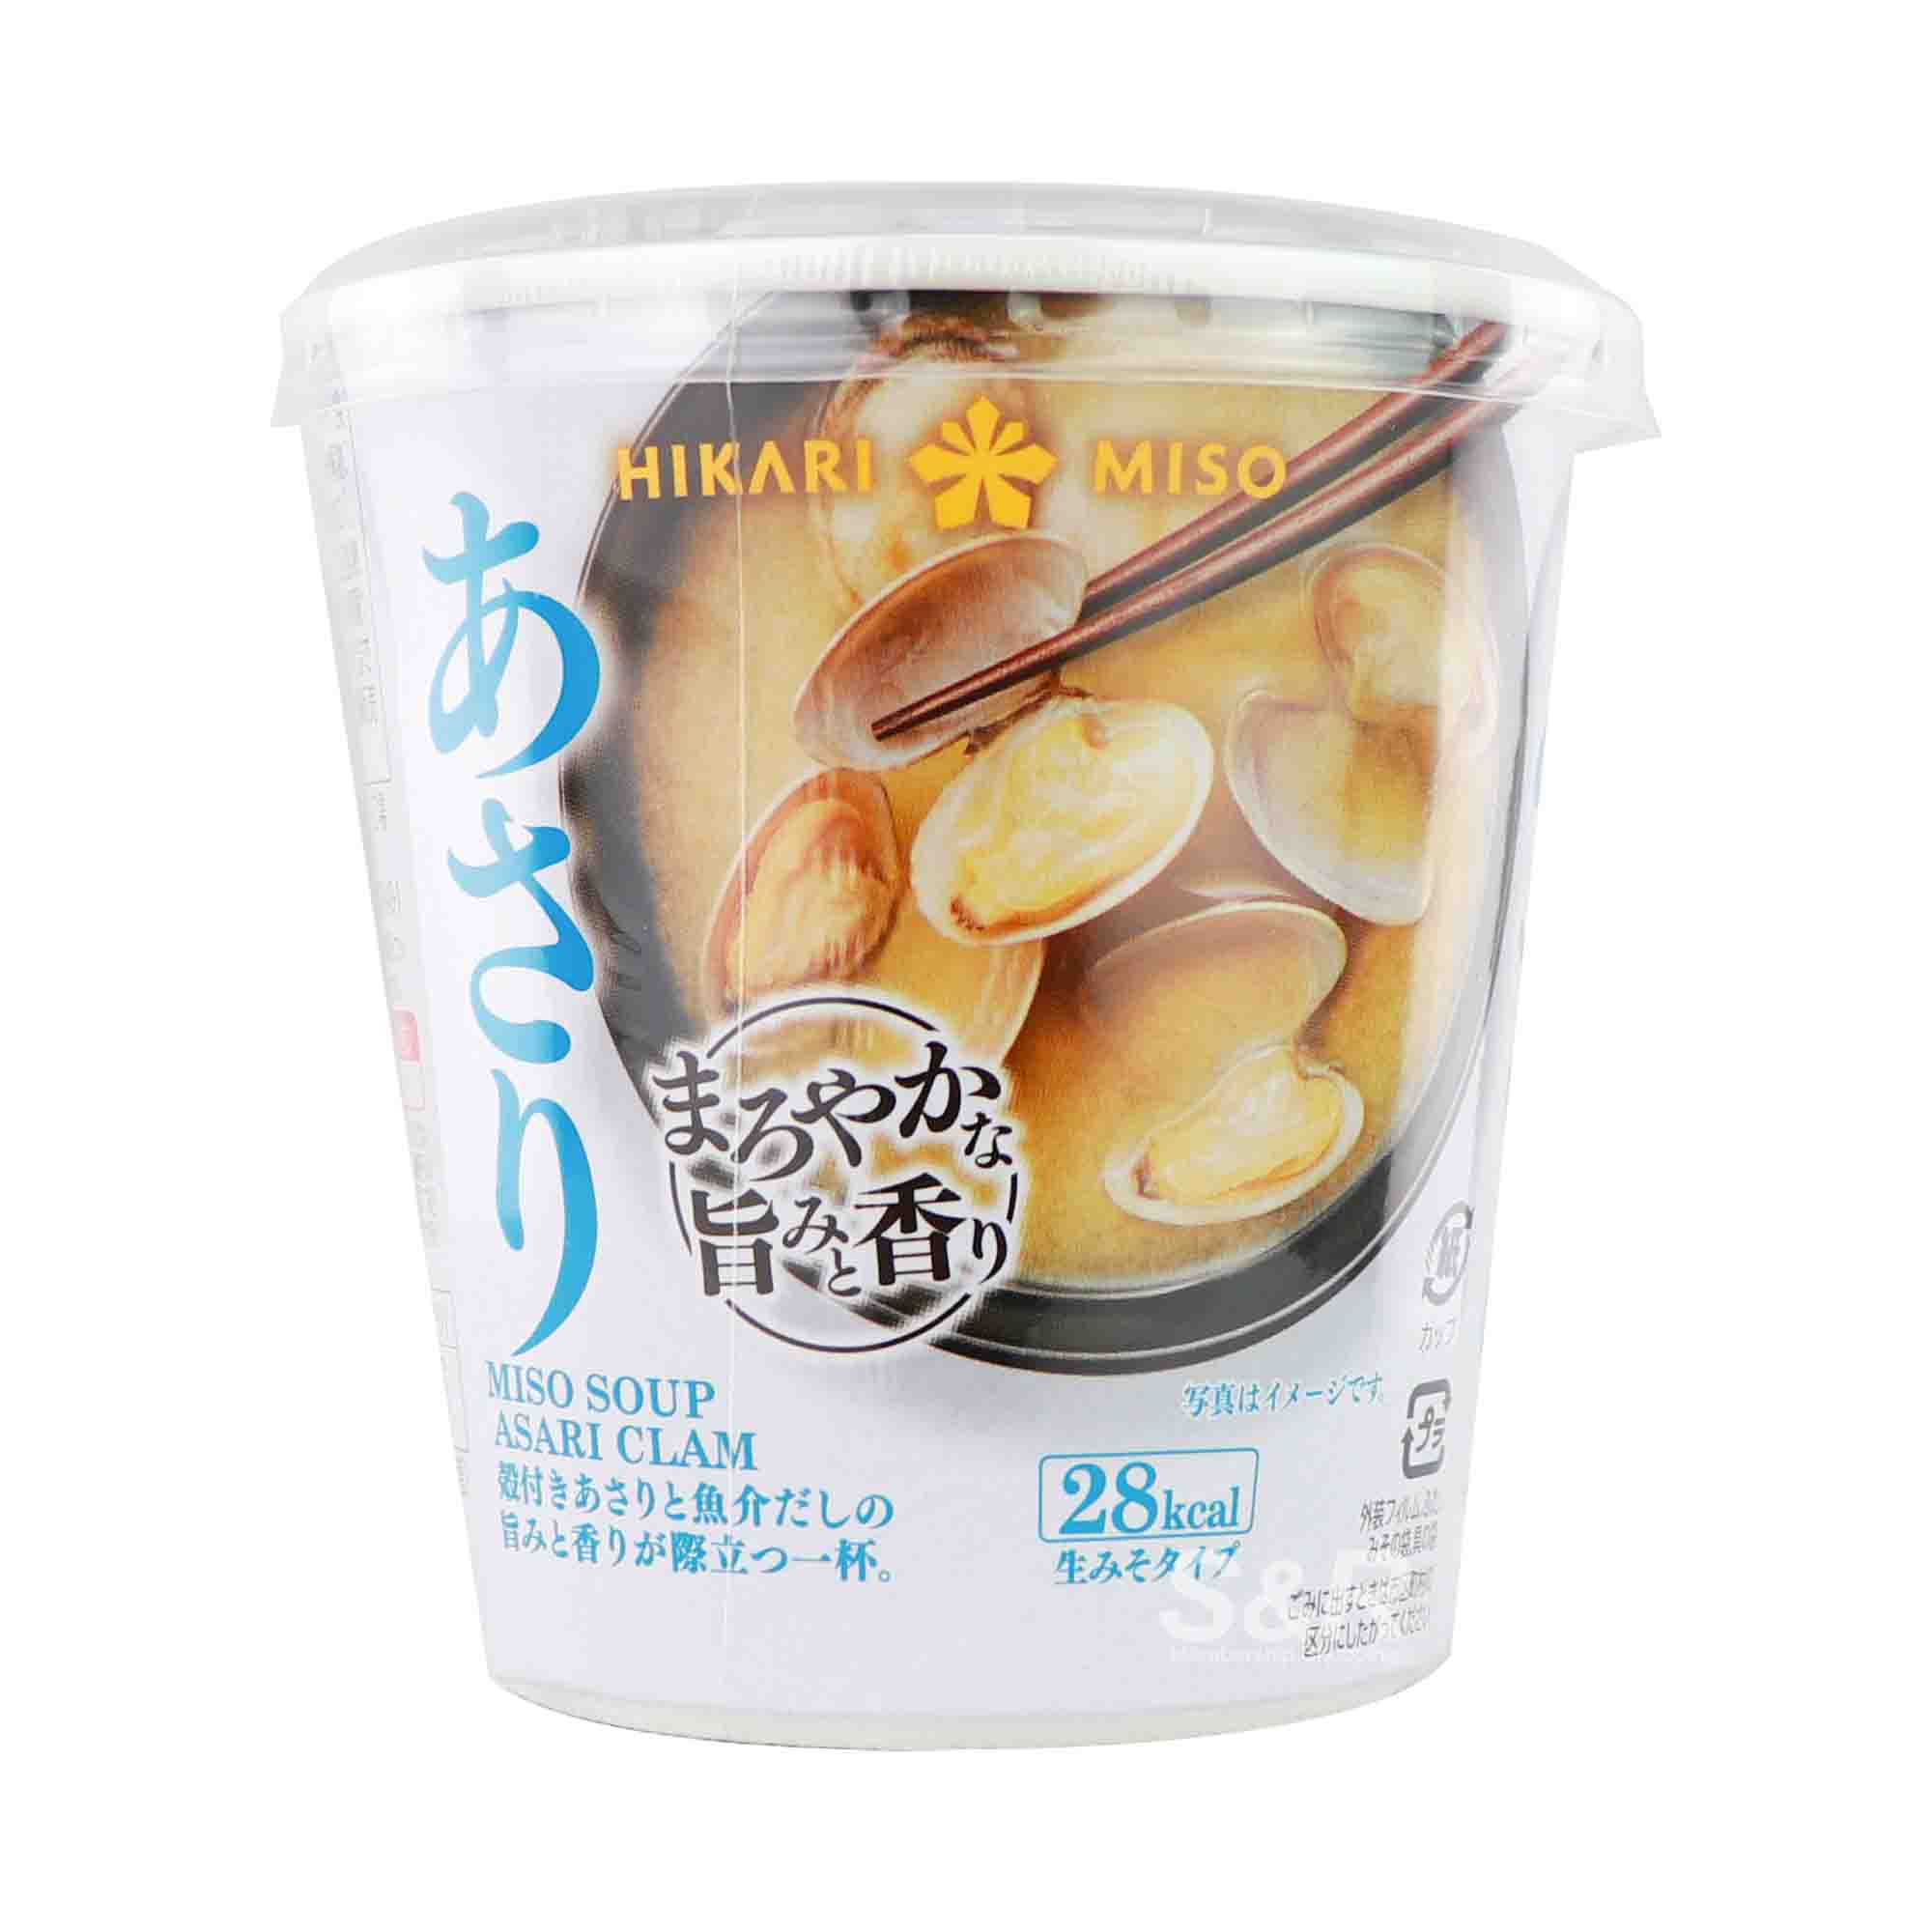 Hikari Miso Asari Clam Soup 1 cup